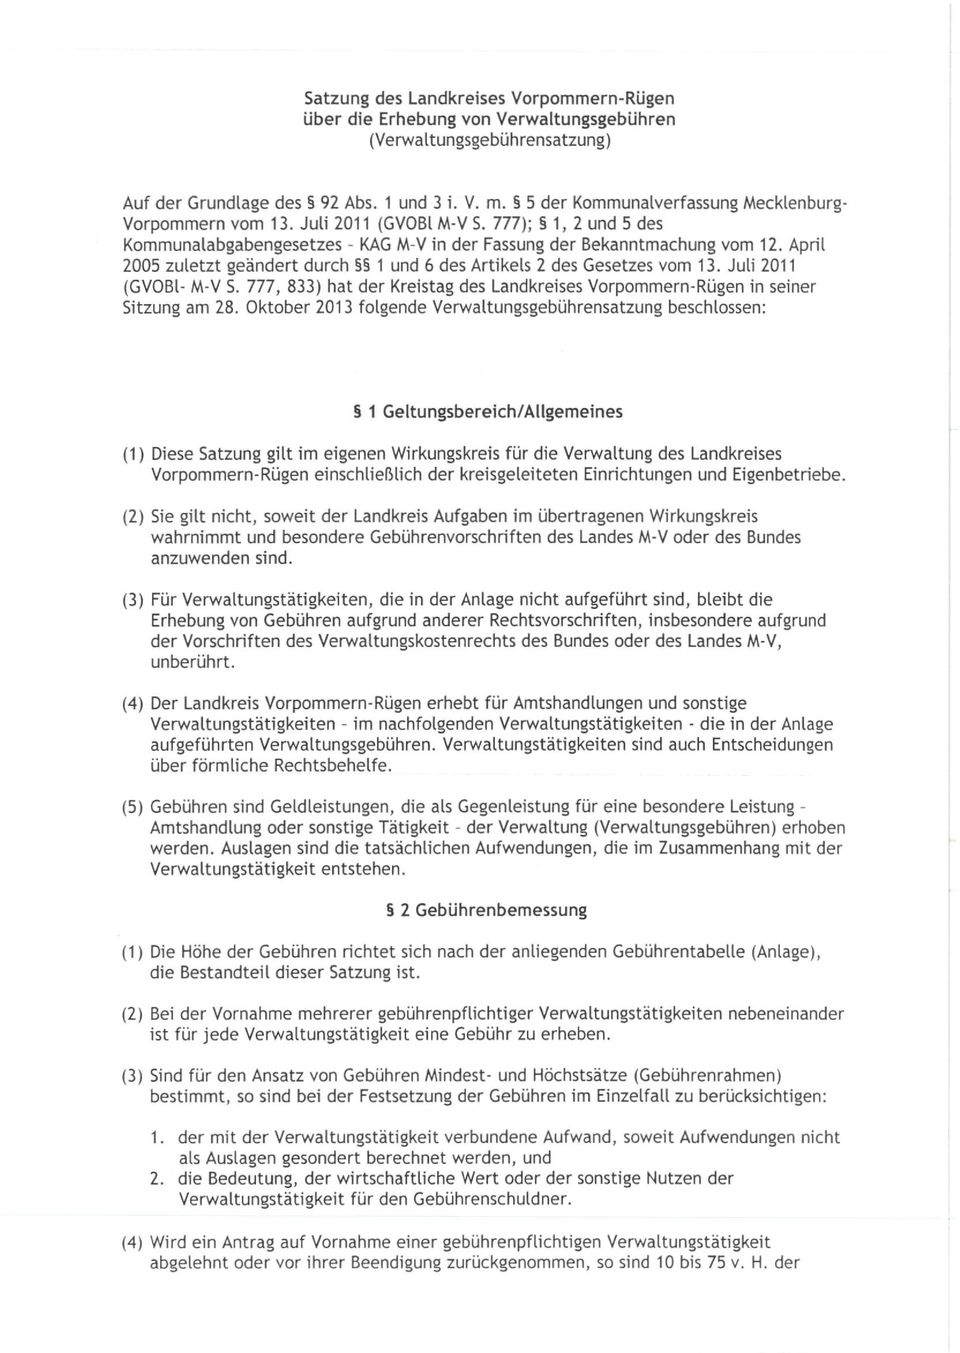 April 2005 zuletzt geändert durch 1 und 6 des Artikels 2 des Gesetzes vom 13. Juli 2011 (GVOBI- M-V S. 777, 833) hat der Kreistag des Landkreises Vorpommern-Rügen in seiner Sitzung am 28.